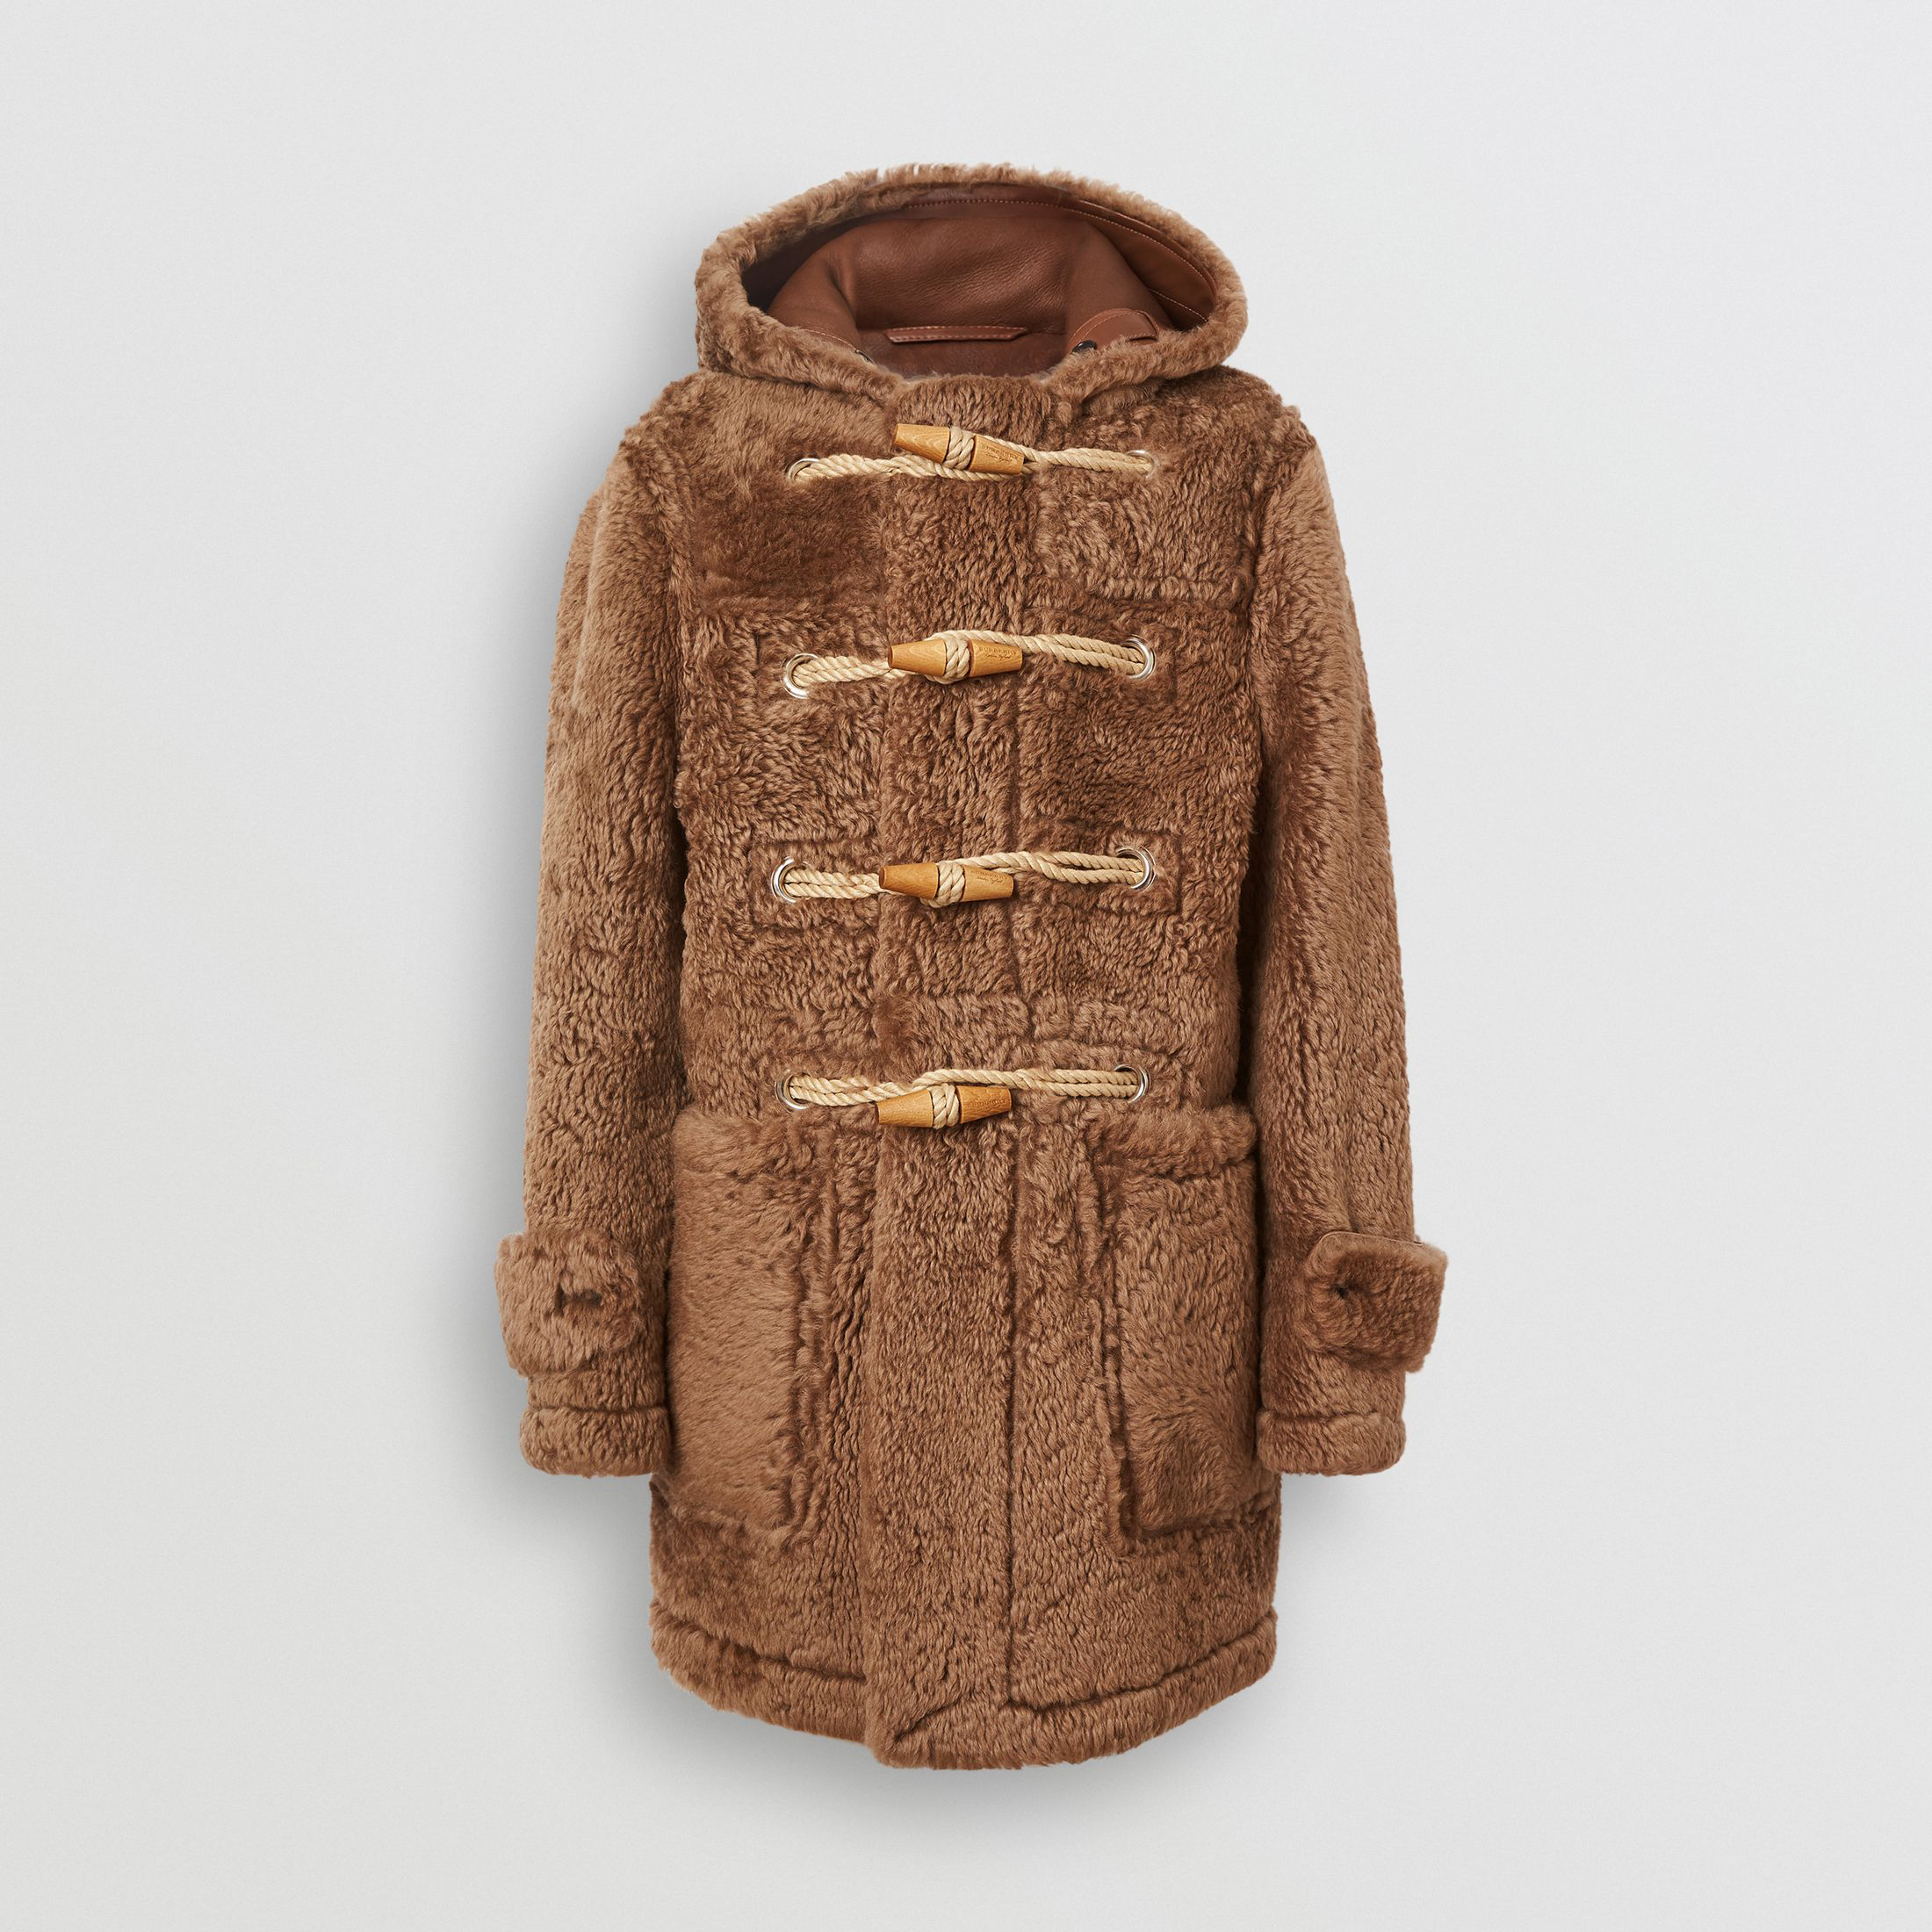 Duffle Coat